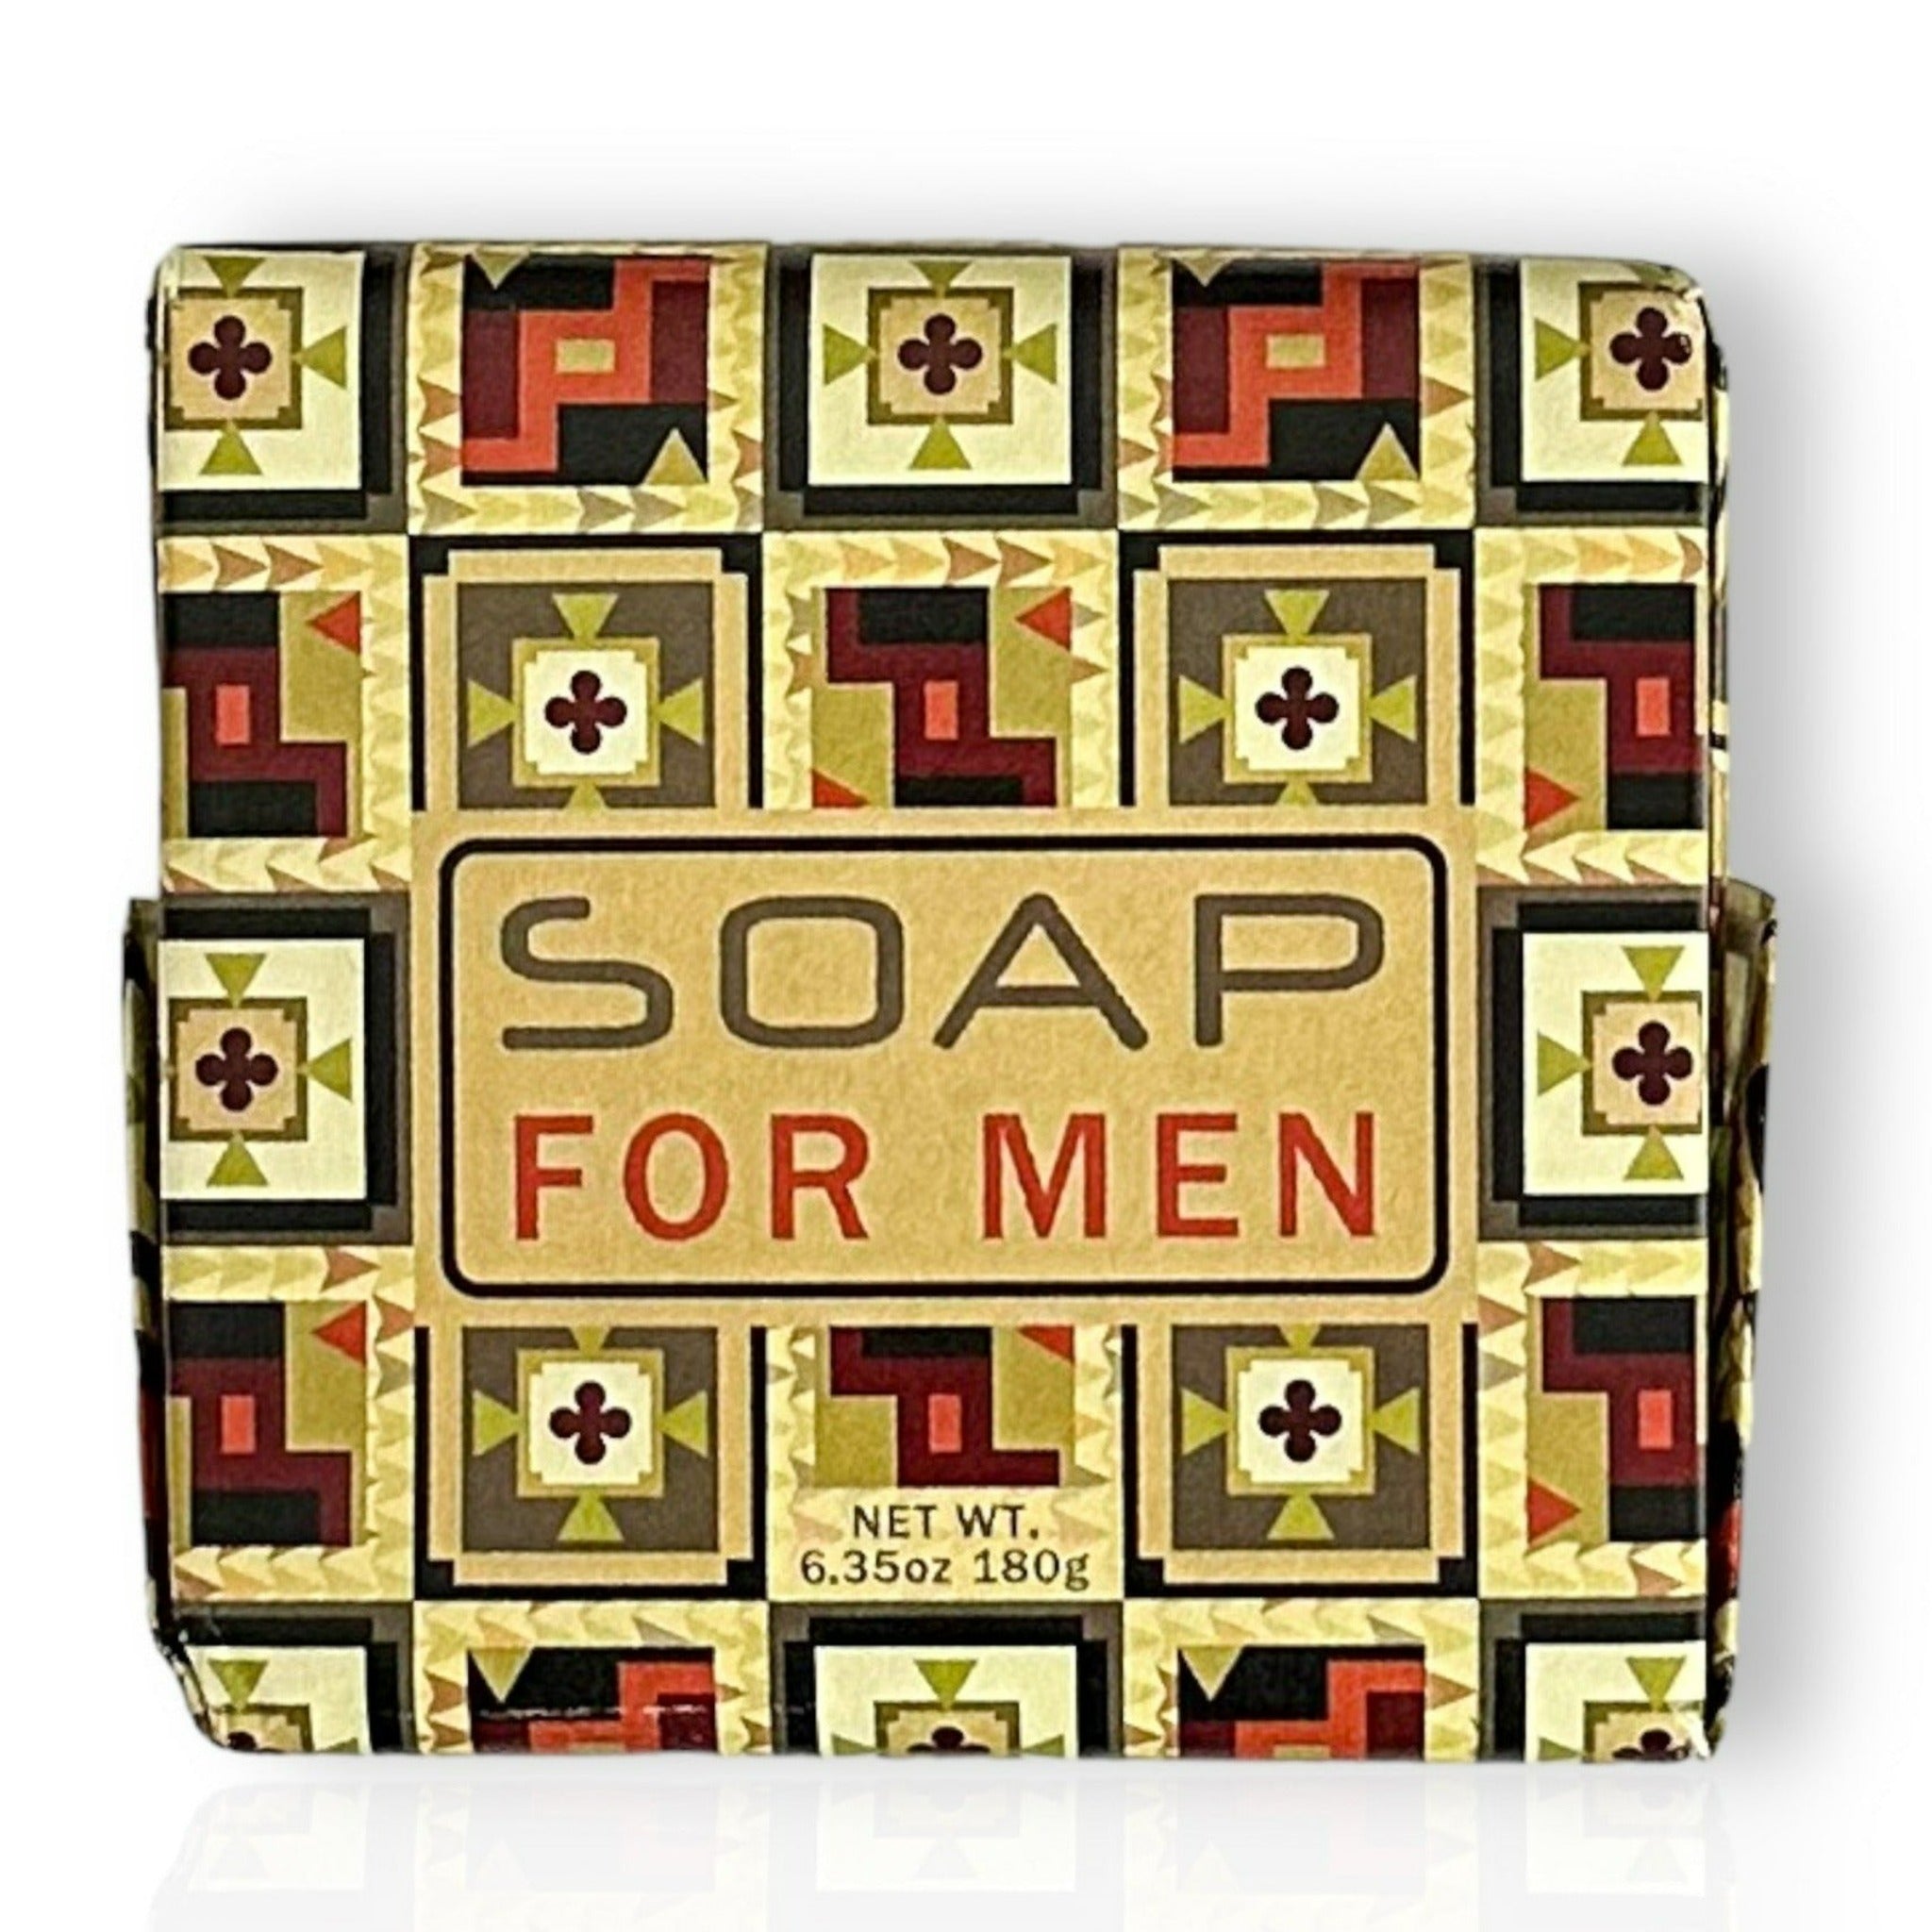 At Bay Man Soap